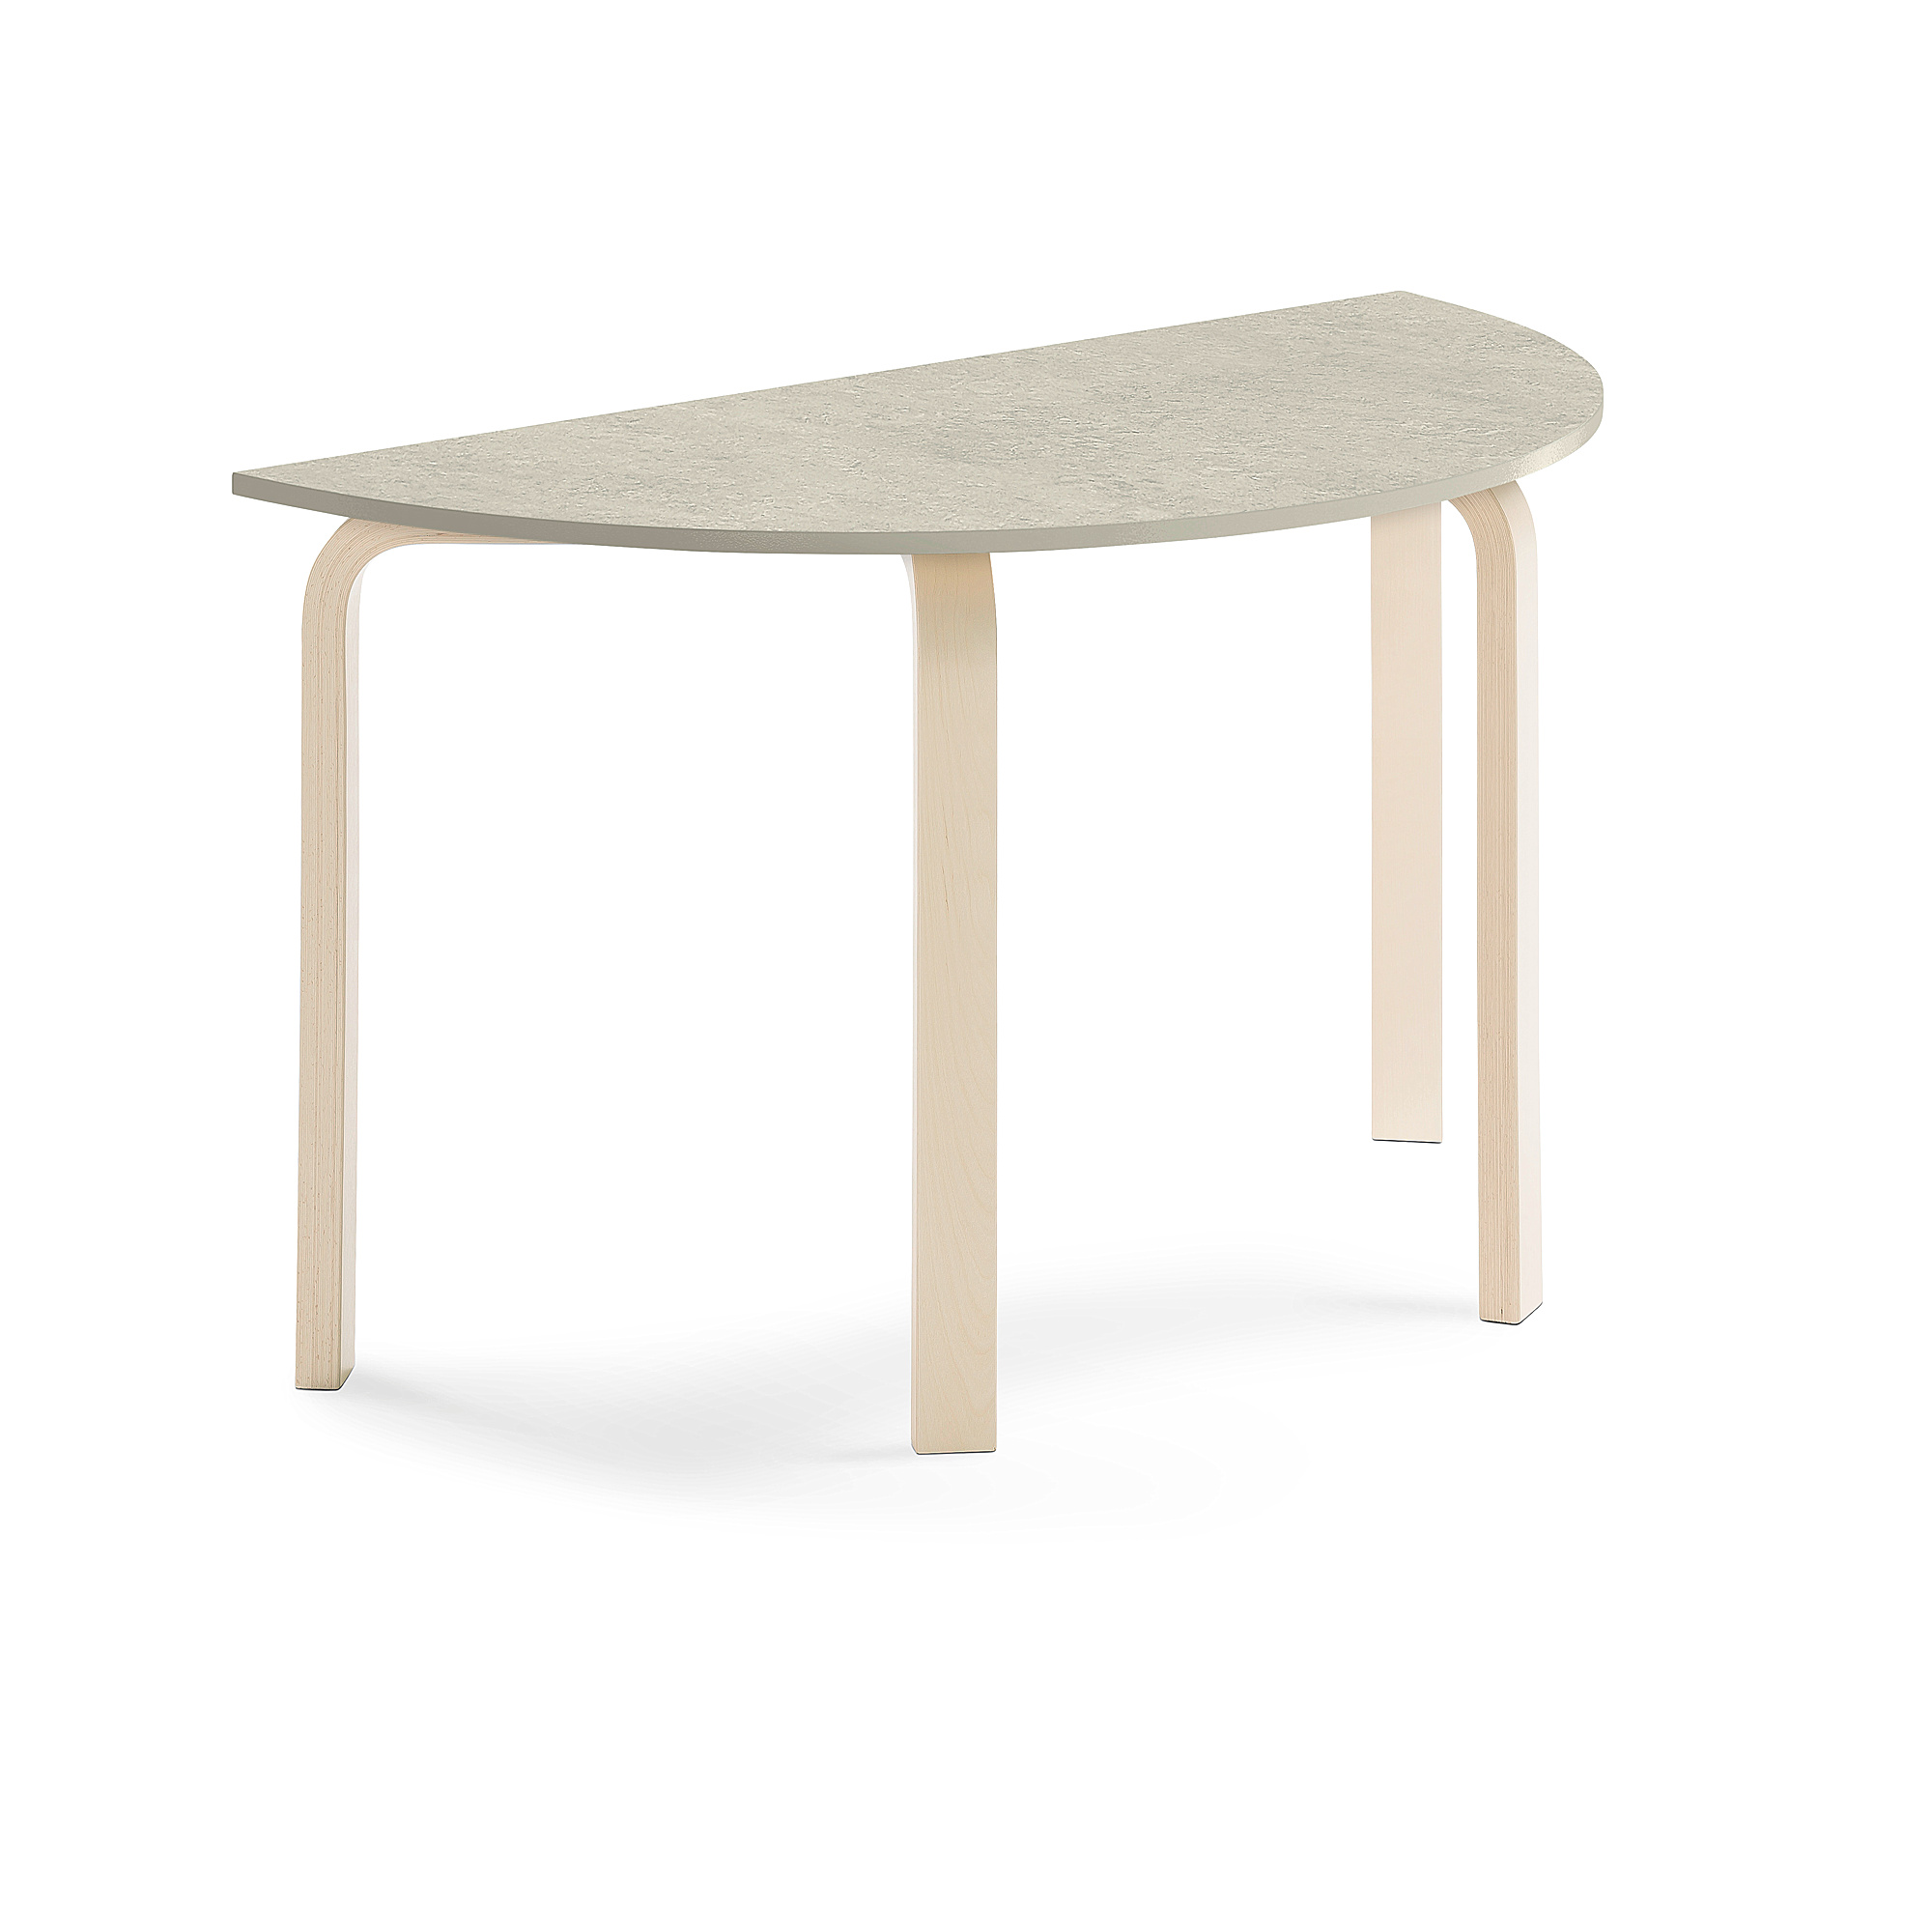 Stůl ELTON, půlkruh, 1200x600x710 mm, bříza, akustické linoleum, šedá